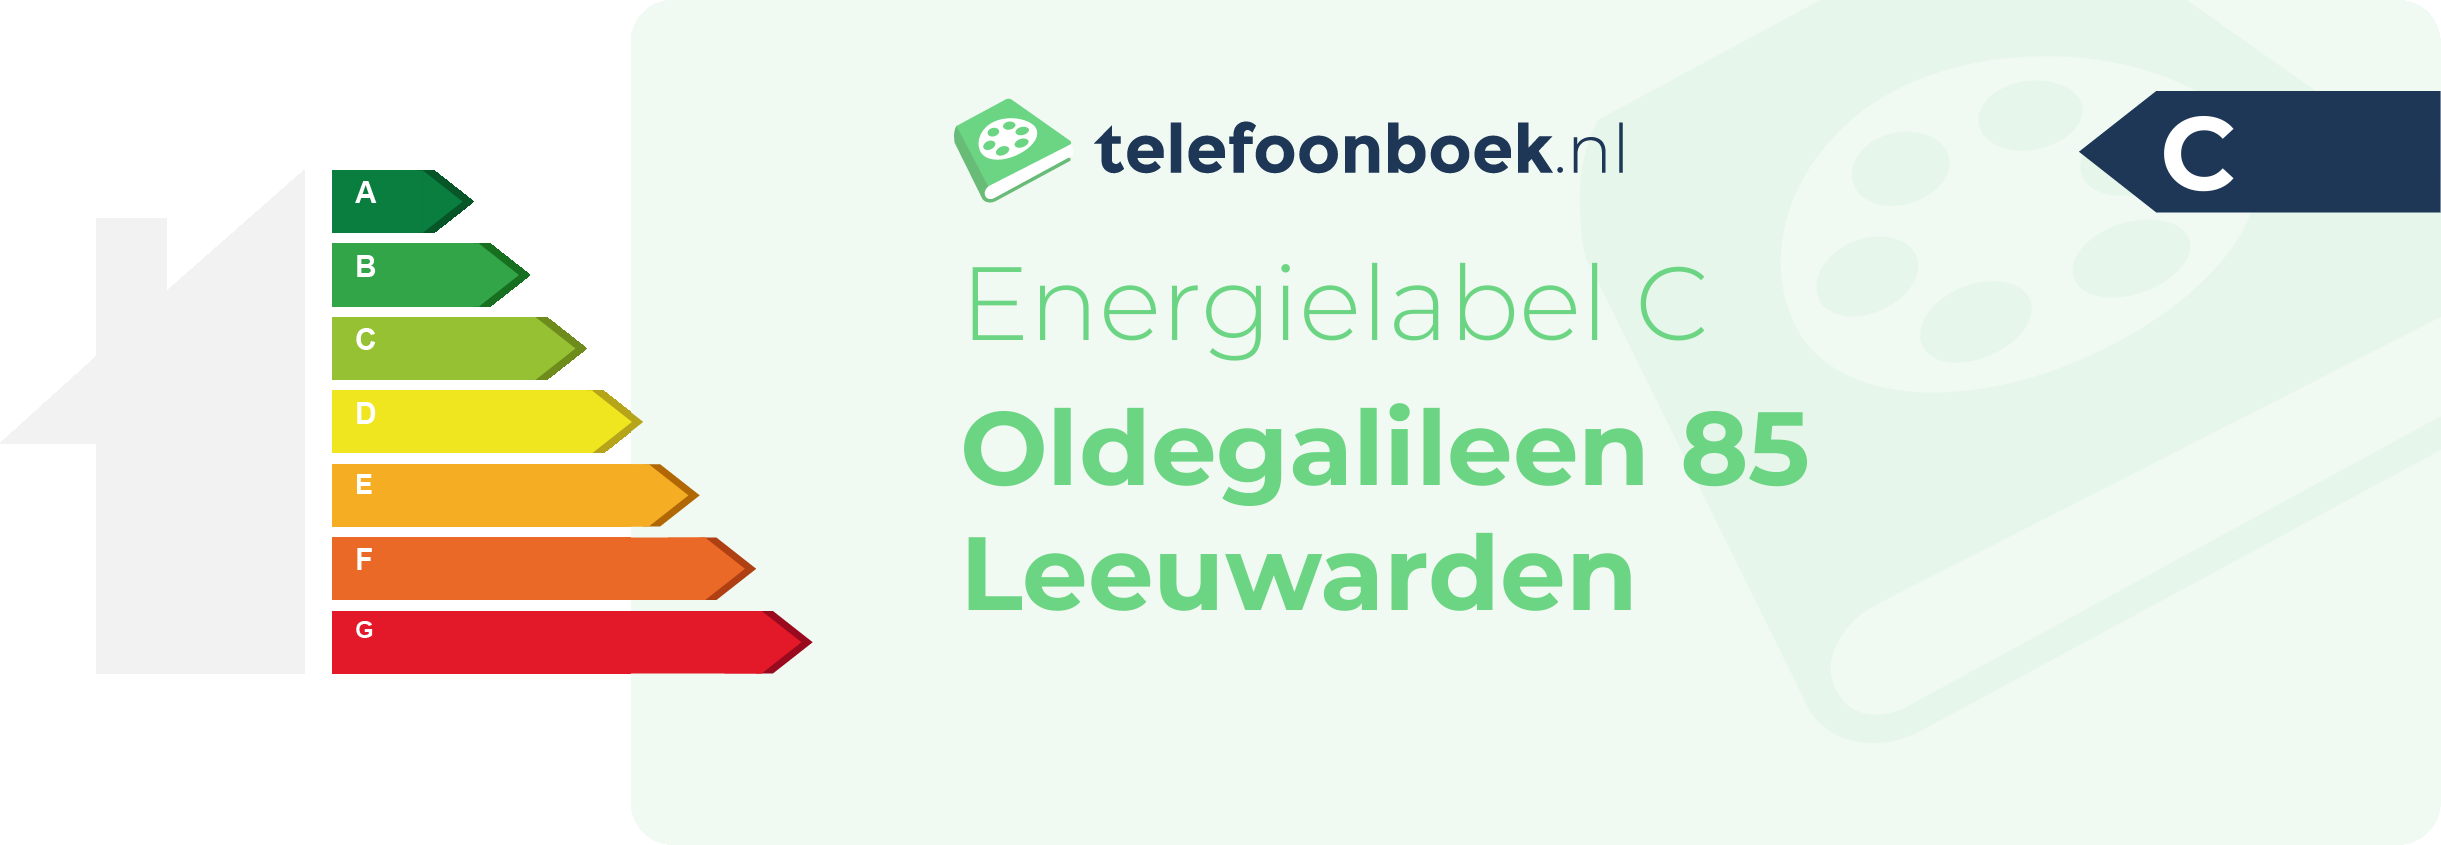 Energielabel Oldegalileen 85 Leeuwarden